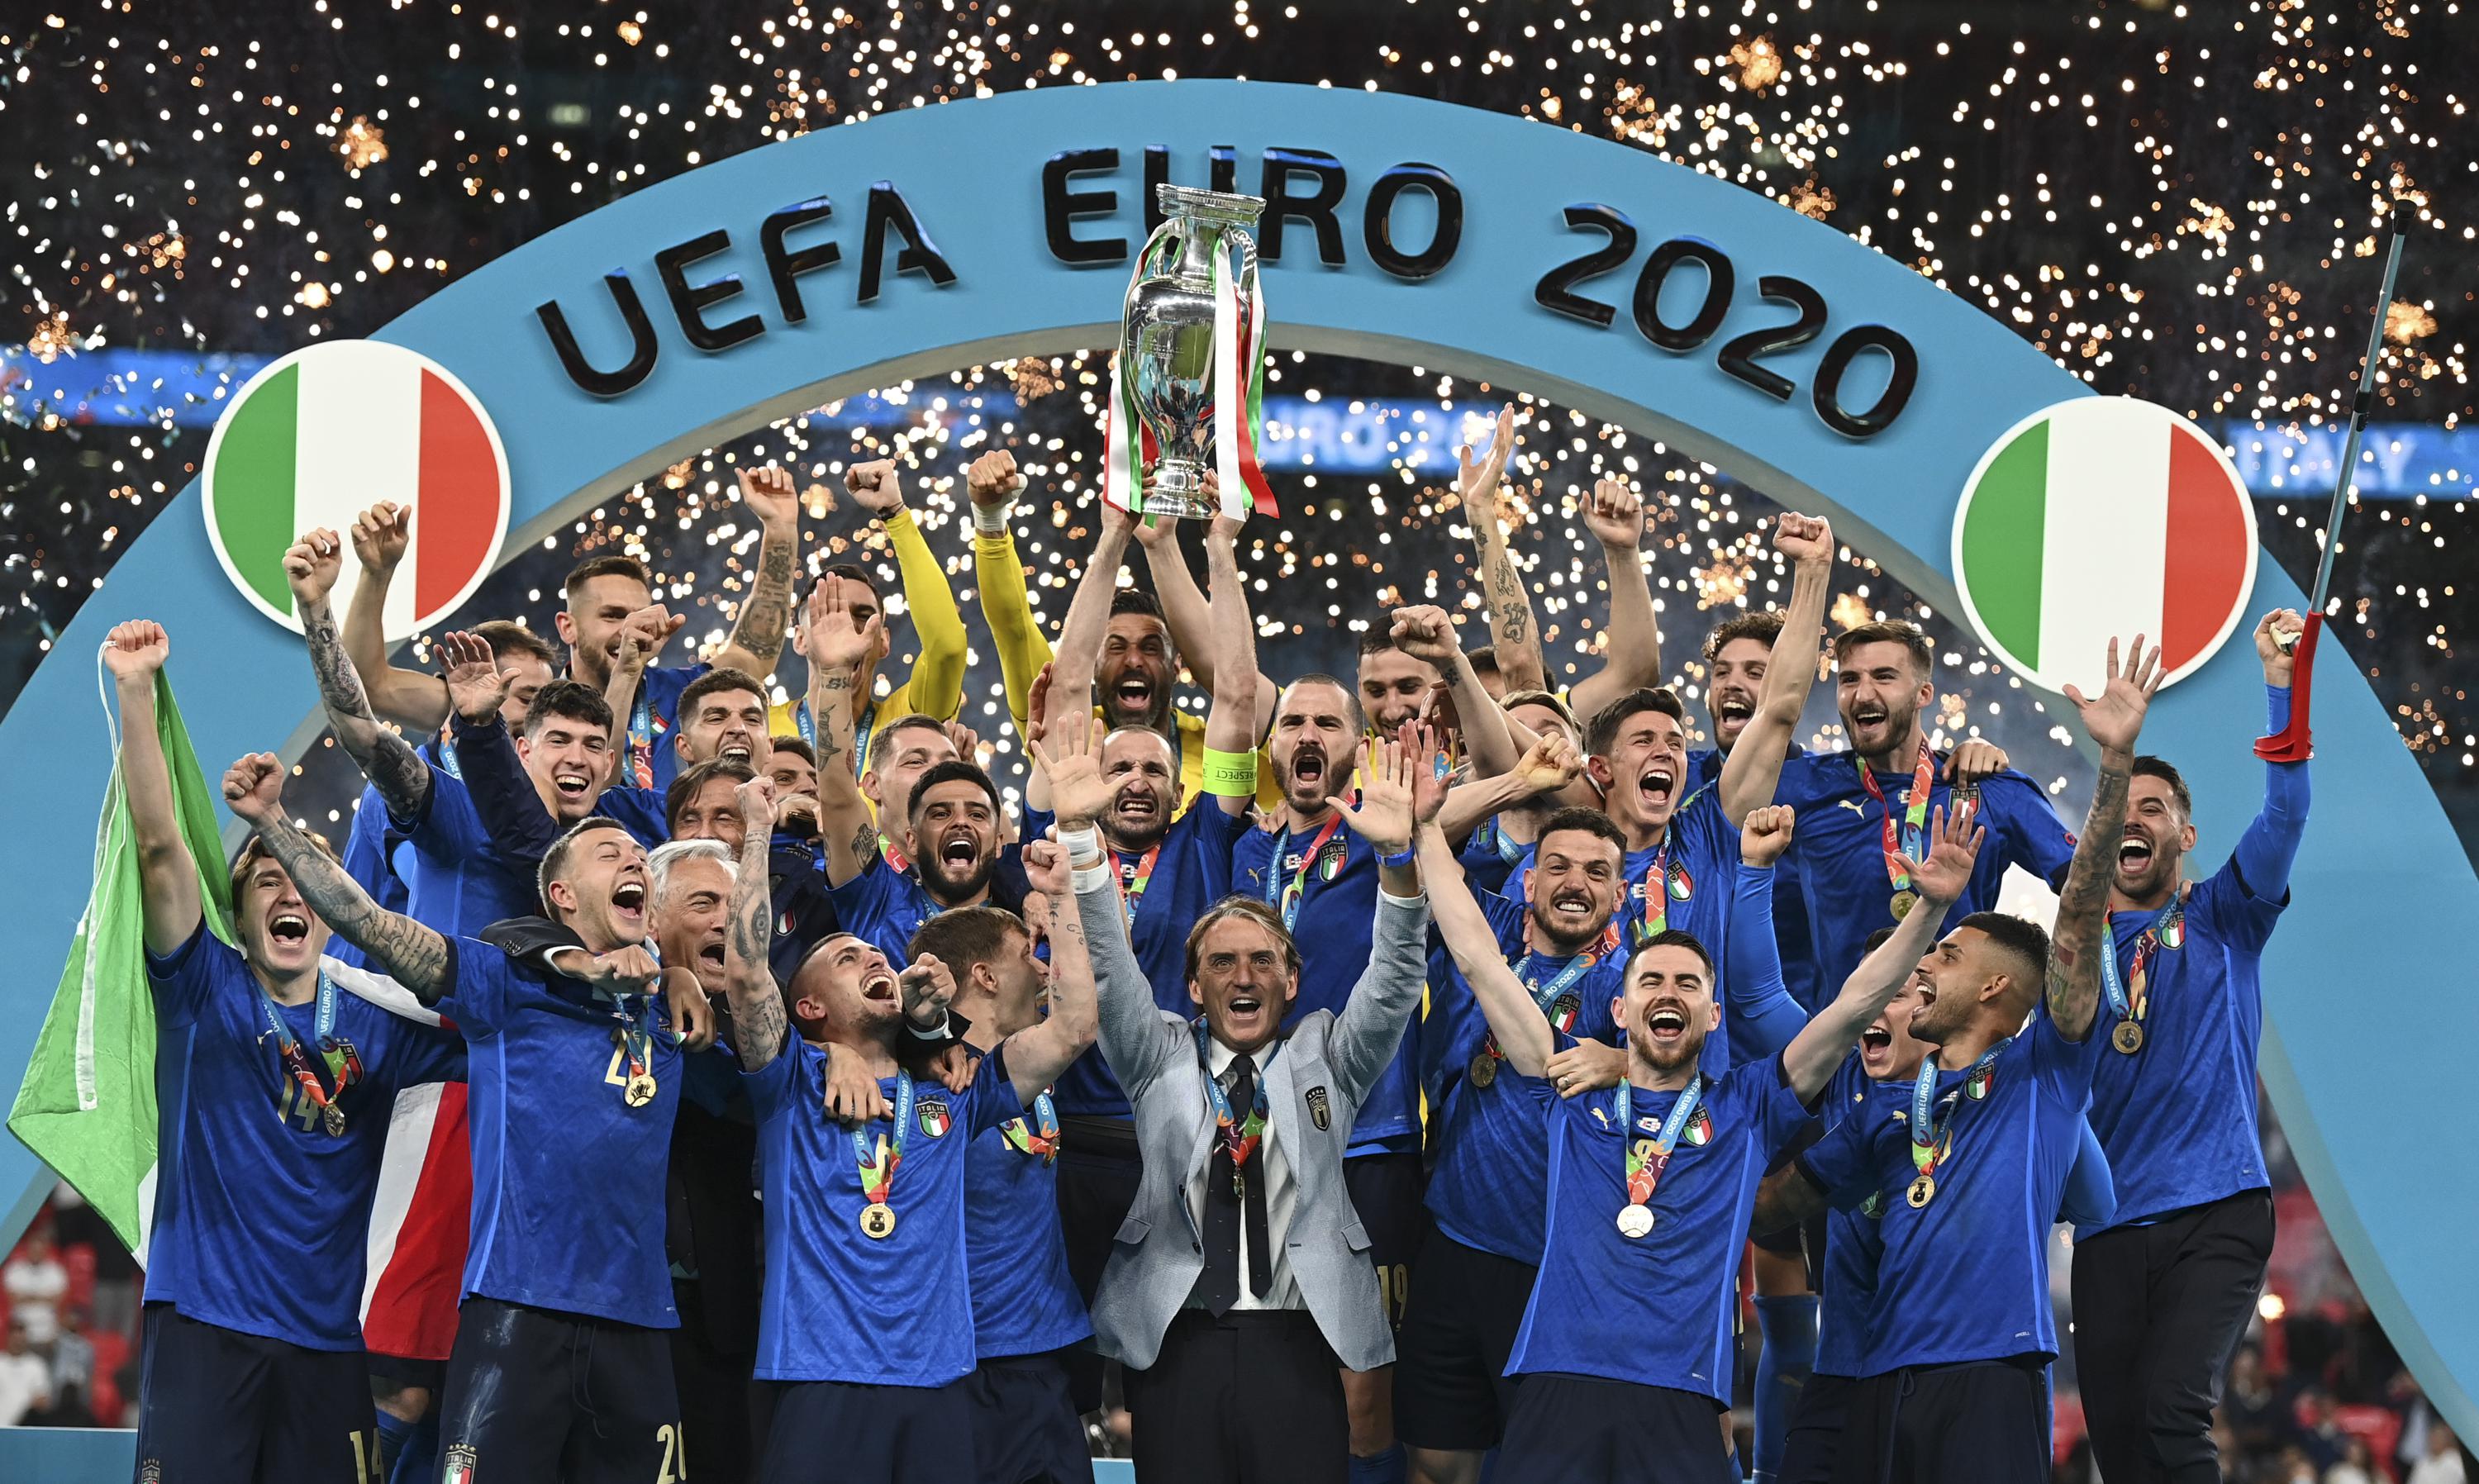 Italy euro 2020